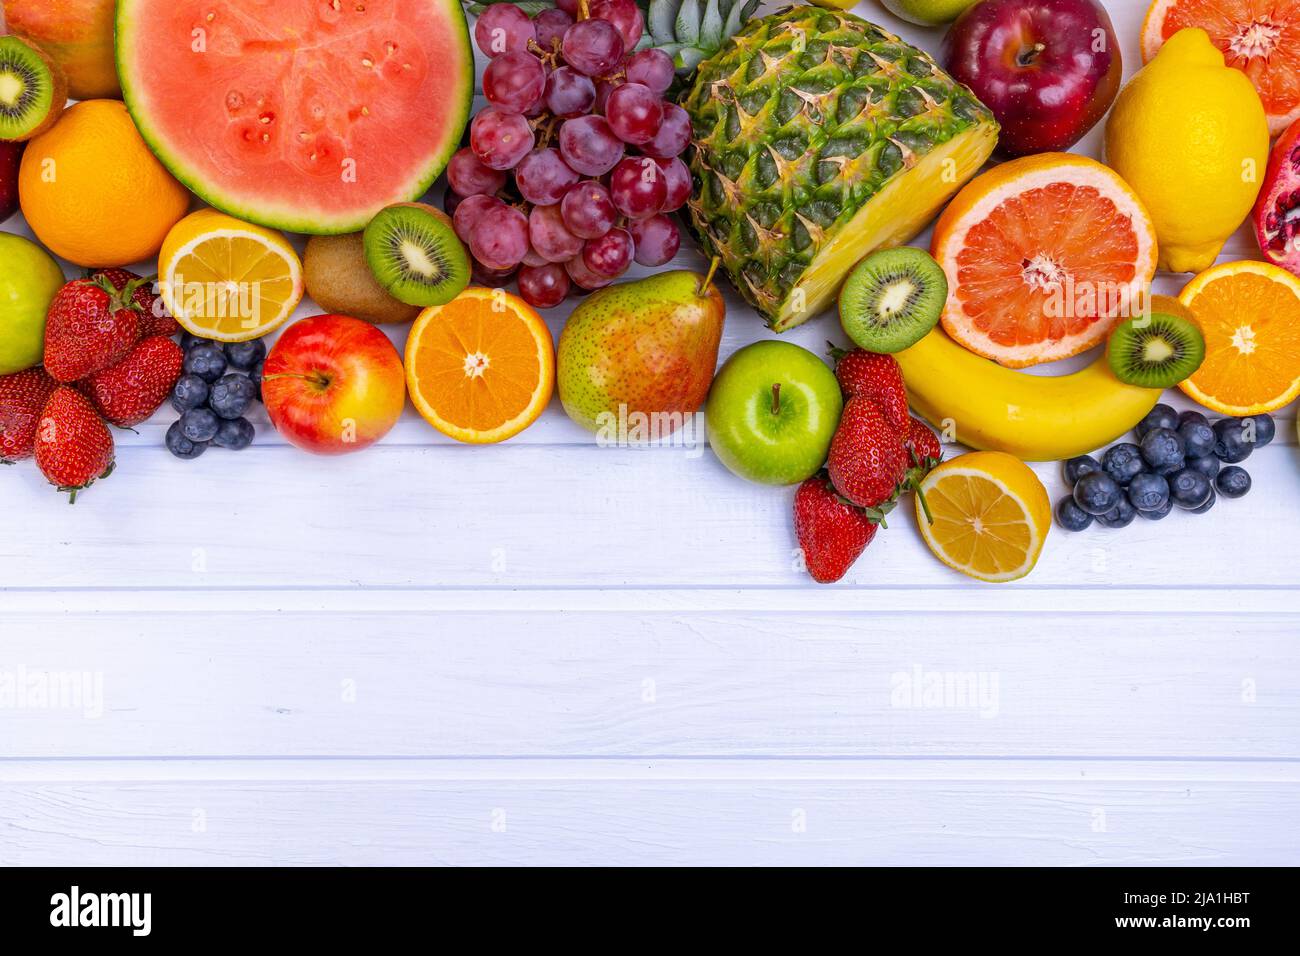 Assortiment de fruits frais pour une alimentation saine. Pastèque, ananas, pomme, poire, fraise, kiwi, citron, orange, raisin, myrtille, grenade, mangue, b Banque D'Images